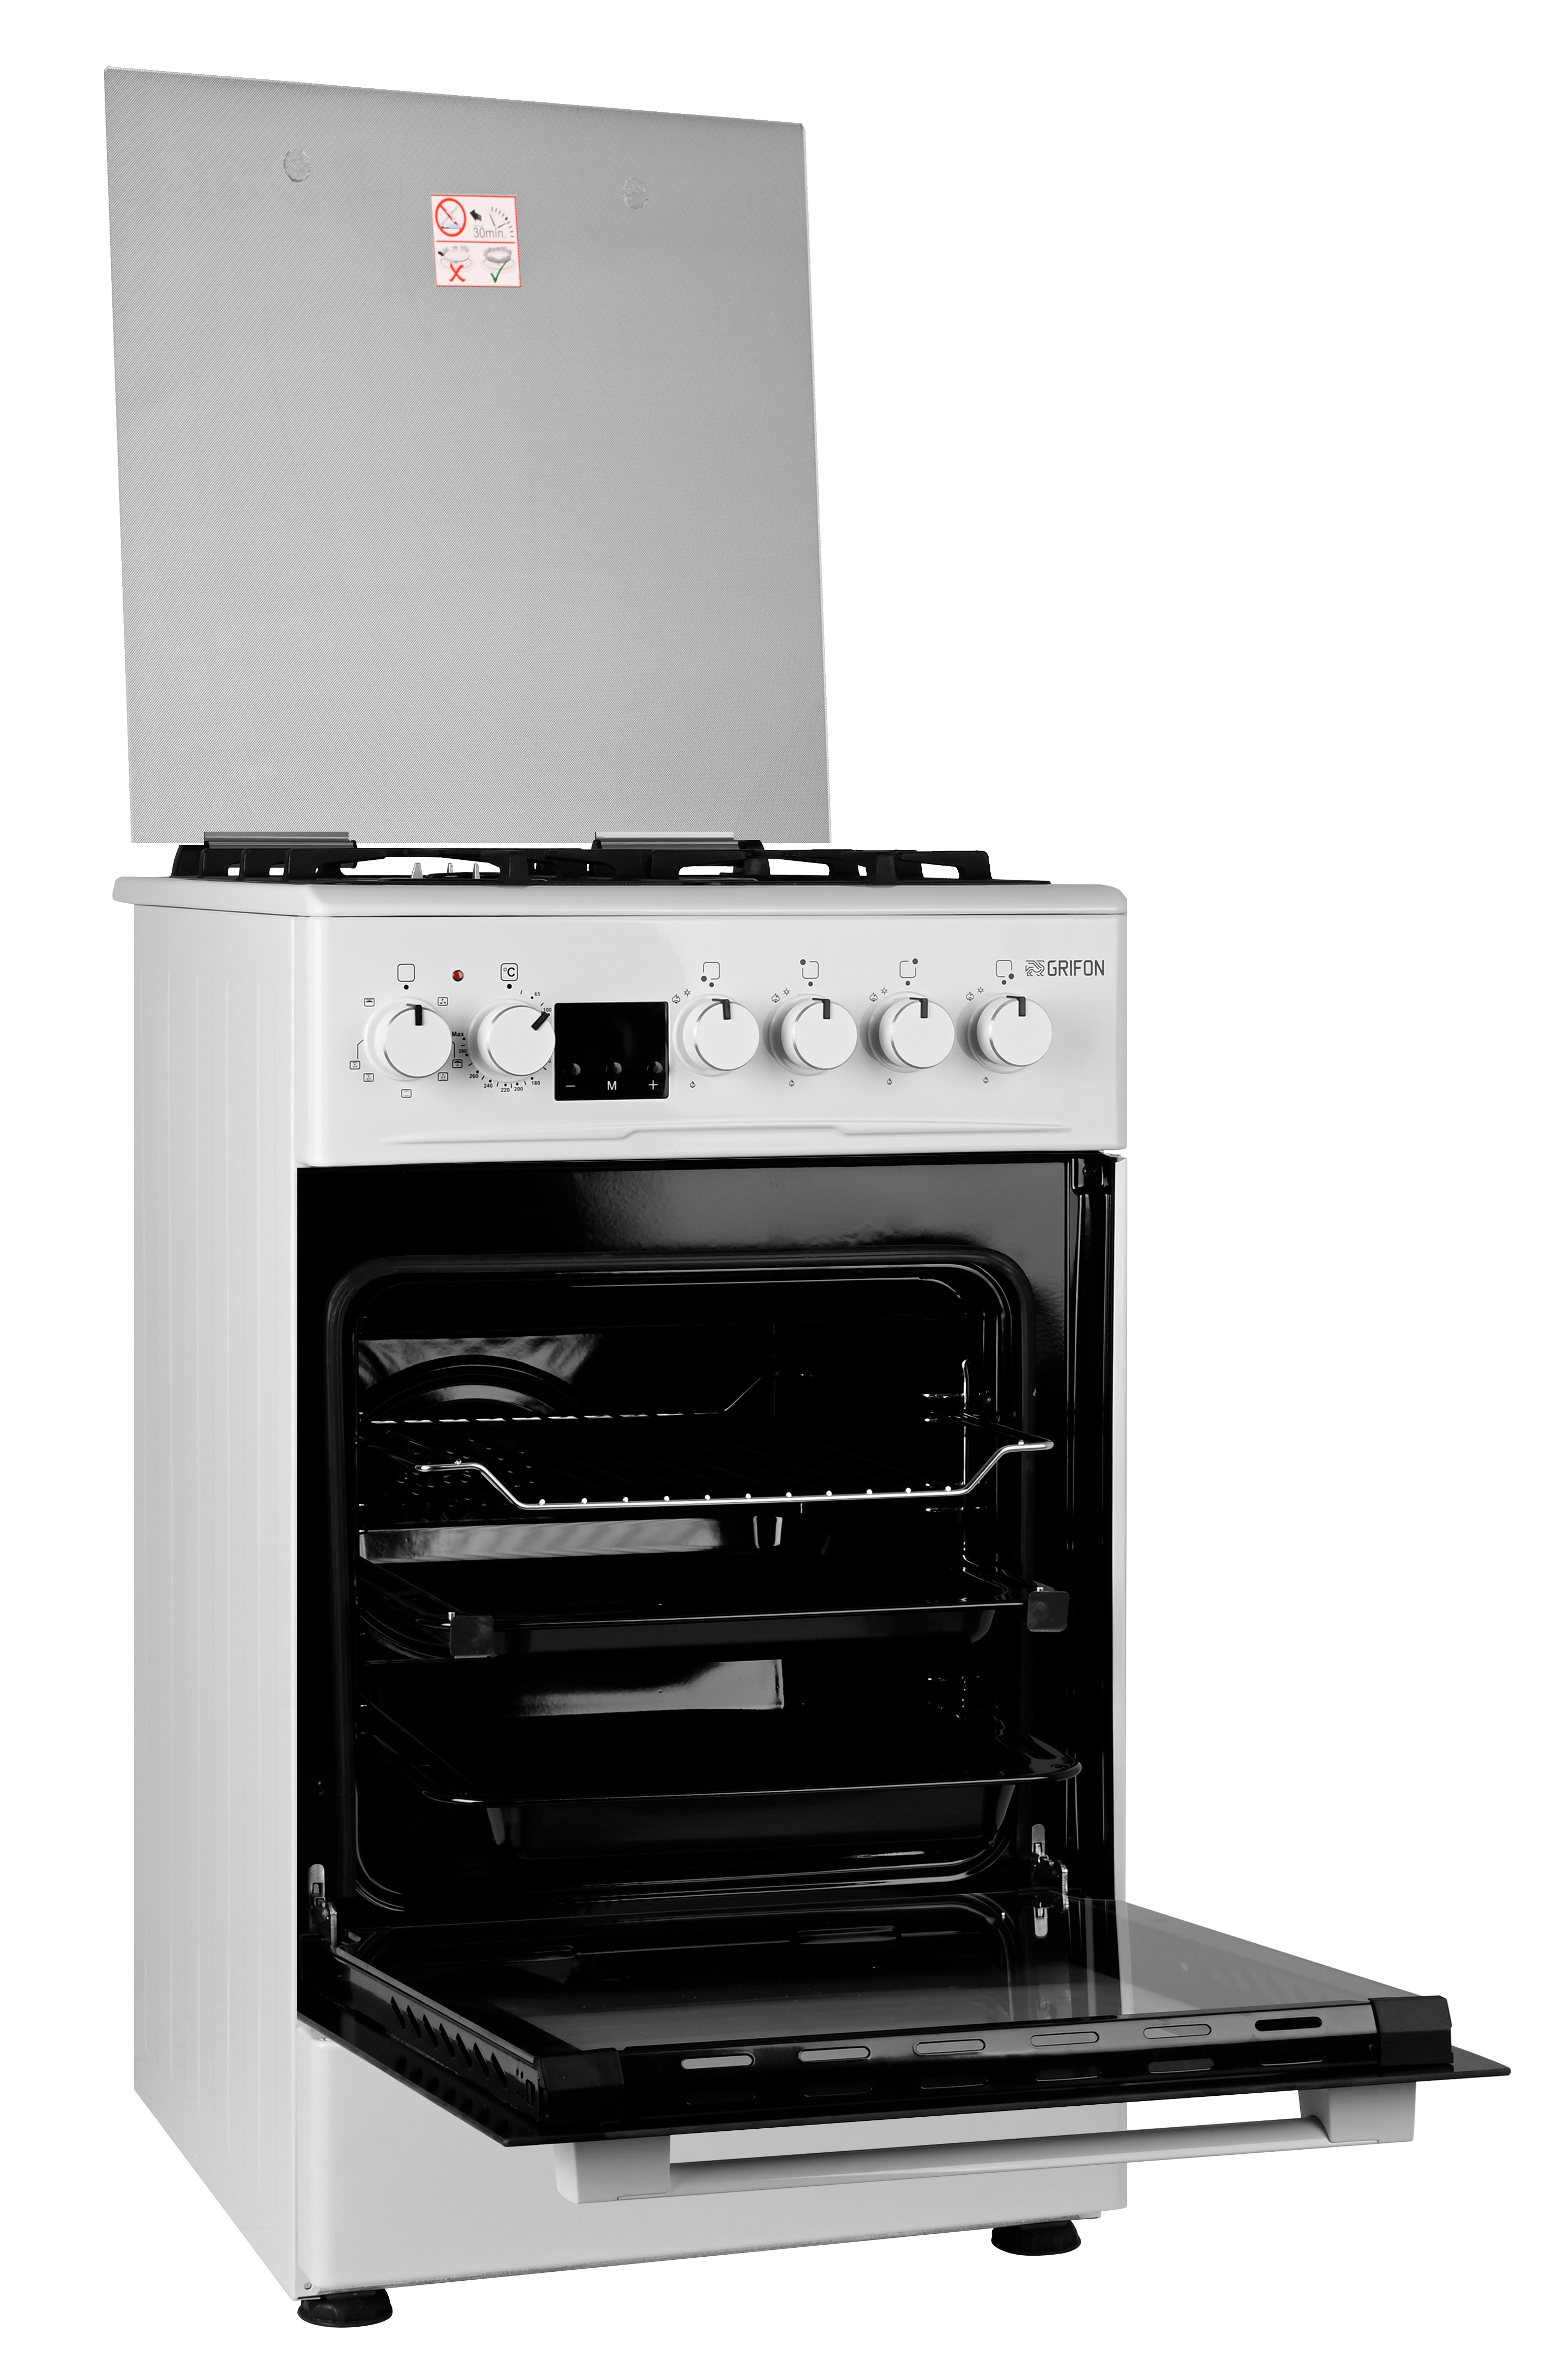 Кухонная плита Grifon C543W-CAWTGBD3 отзывы - изображения 5